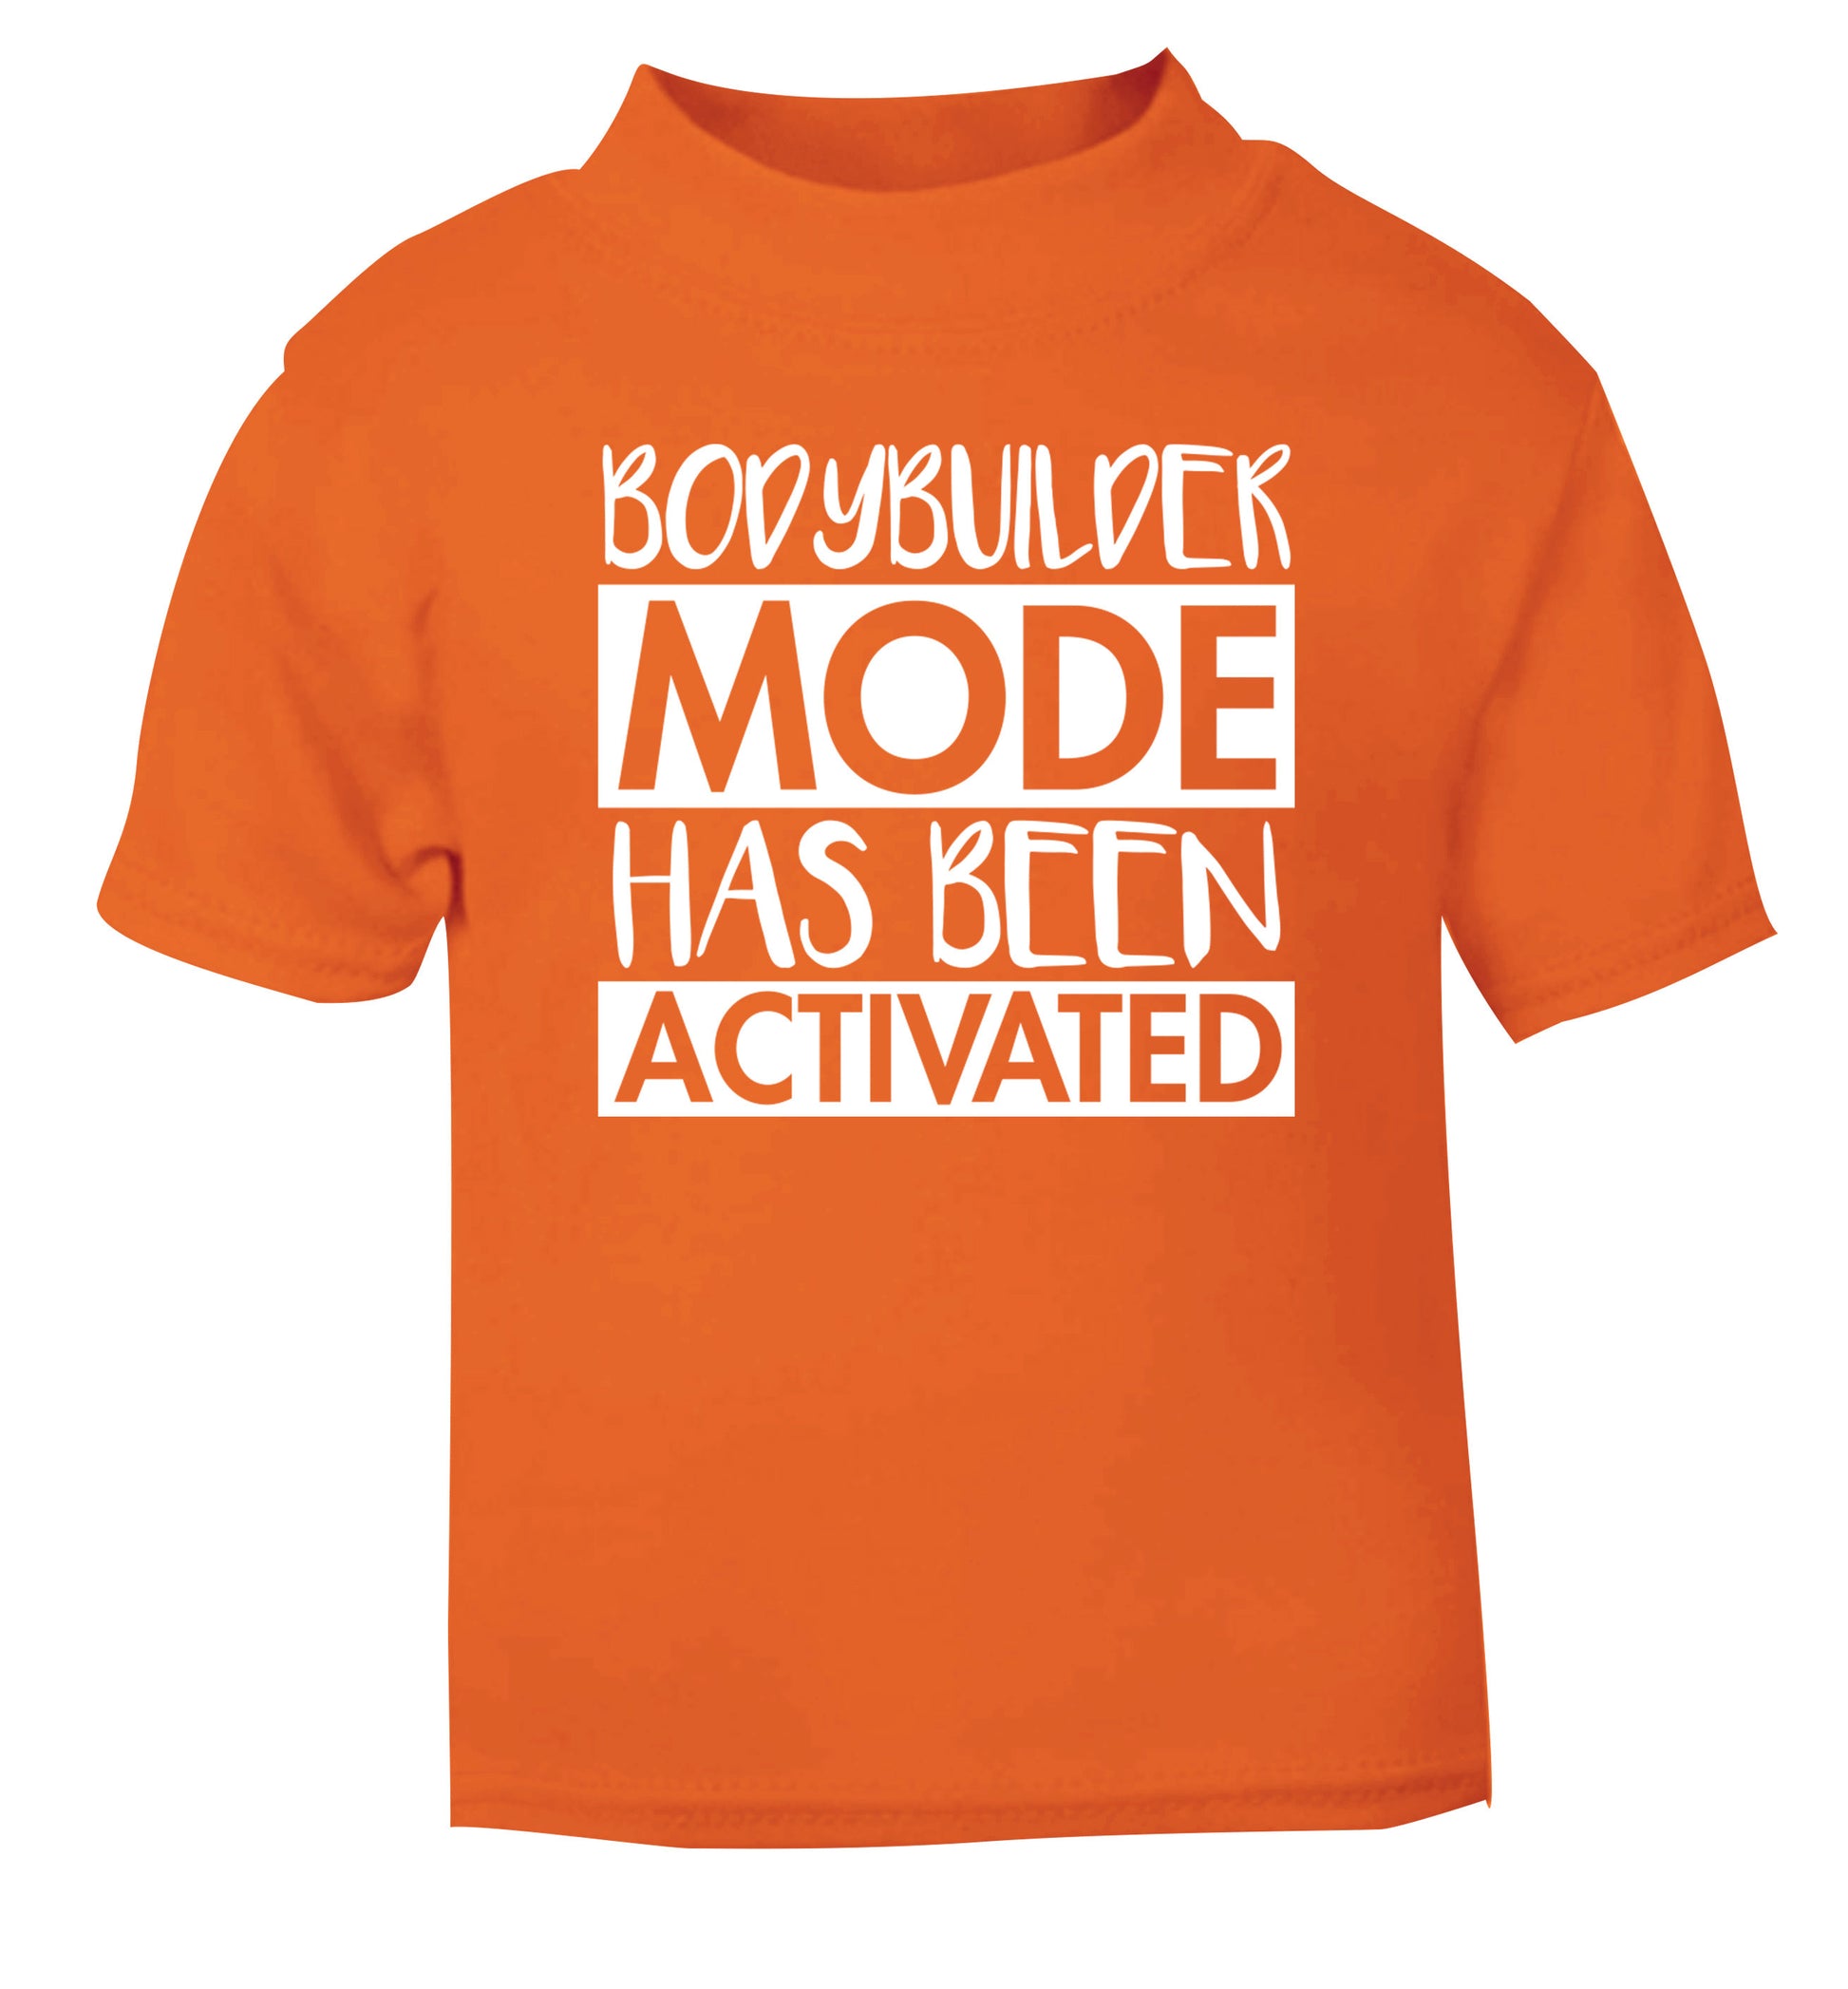 Bodybuilder mode activated orange Baby Toddler Tshirt 2 Years